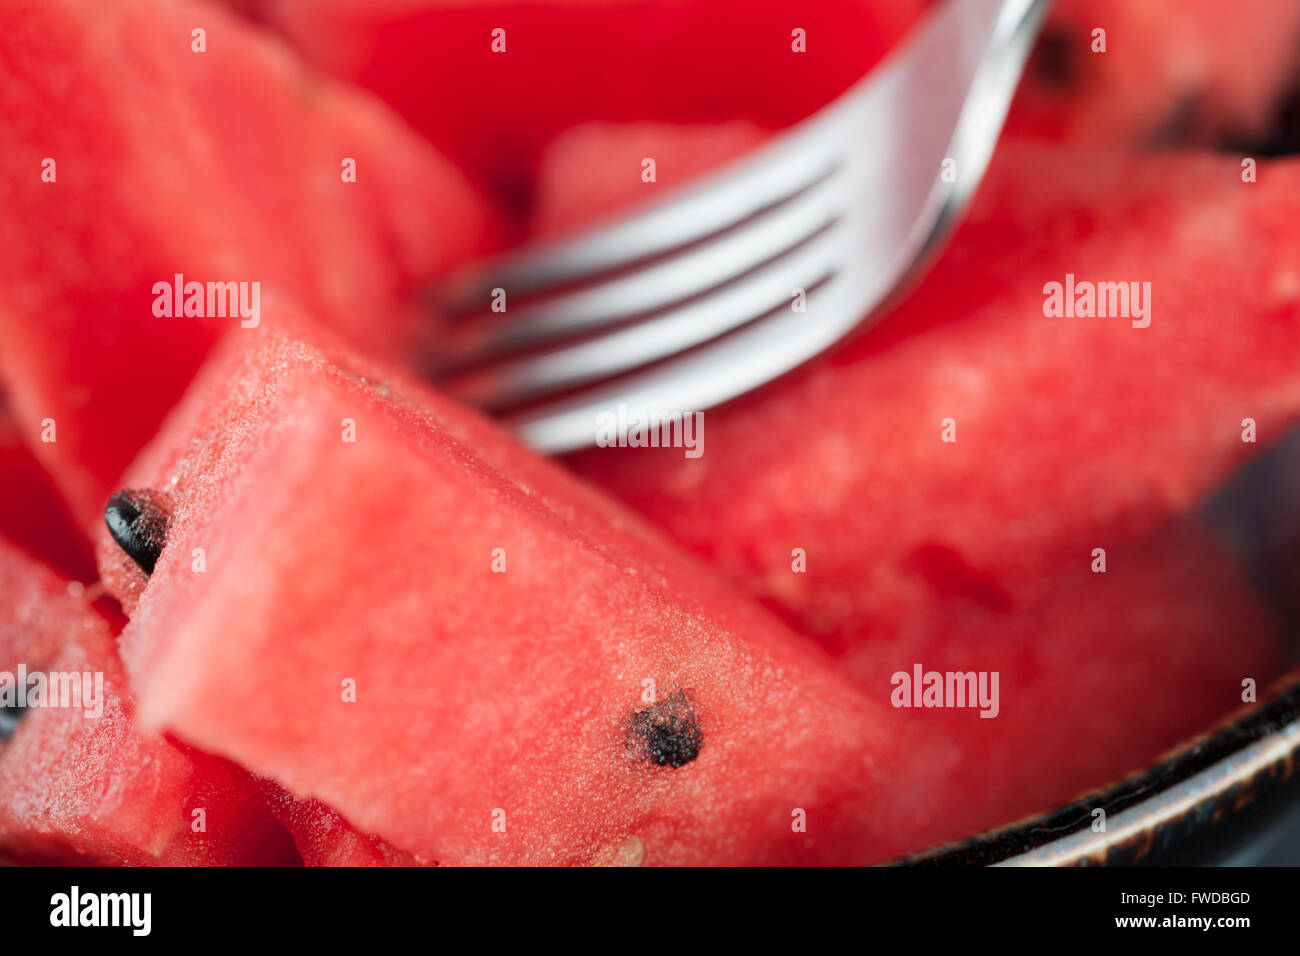 Watermelon slices avec gros plan extrême de la fourche. Profondeur de champ. Banque D'Images